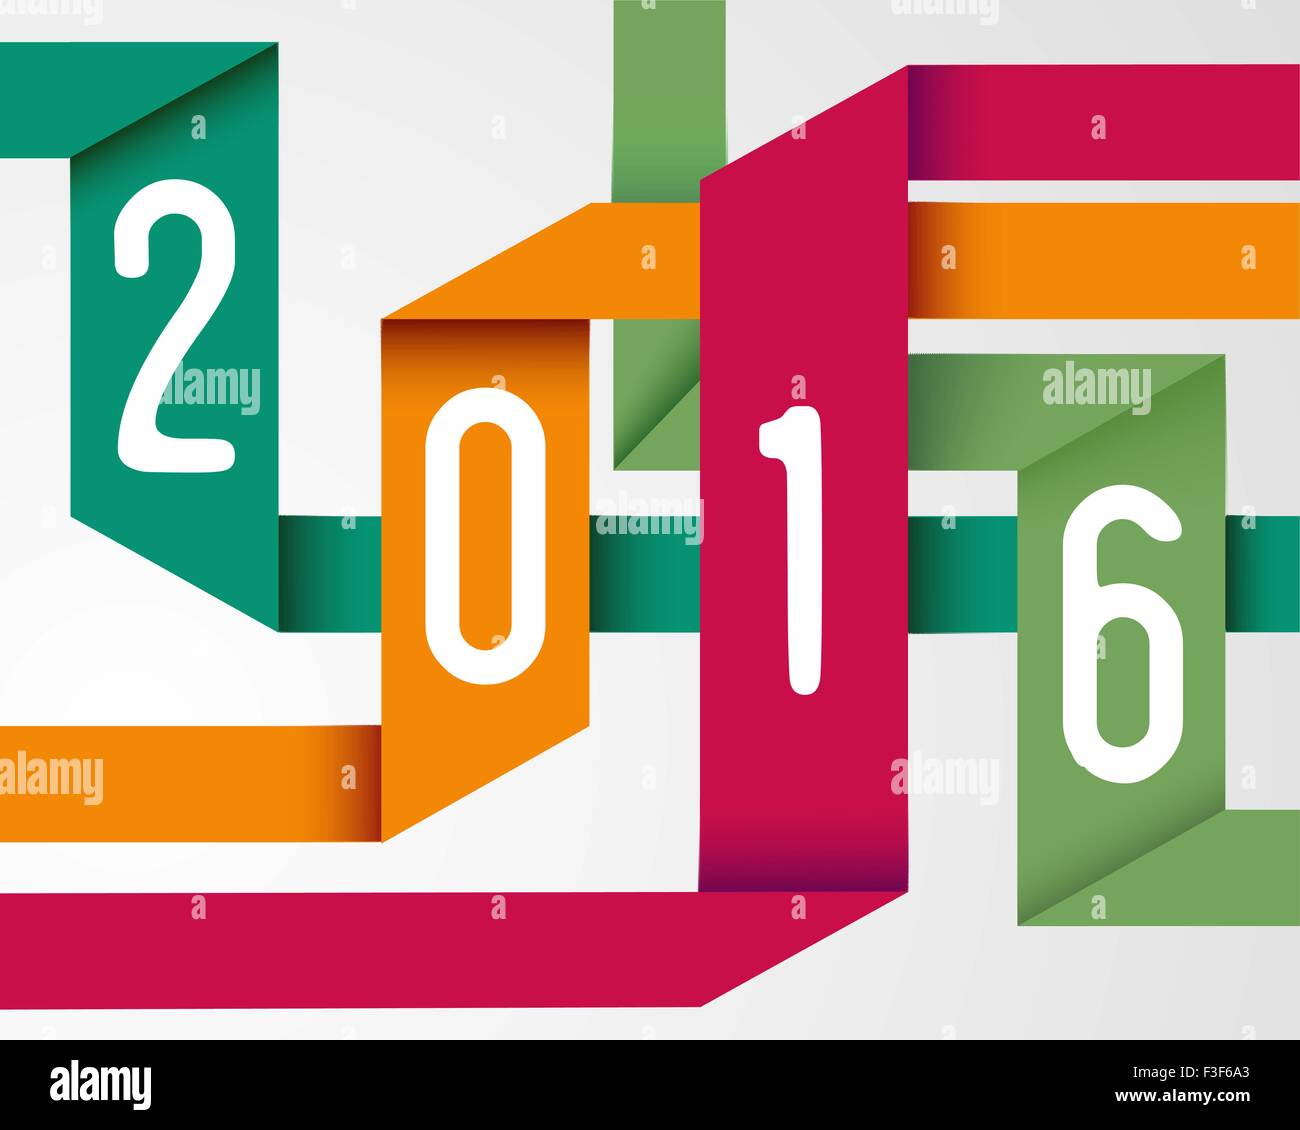 Frohes neues Jahr 2016 Urlaub Origami einfache Grusskarte Hintergrundfarbe. EPS10 Vektor. Stock Vektor